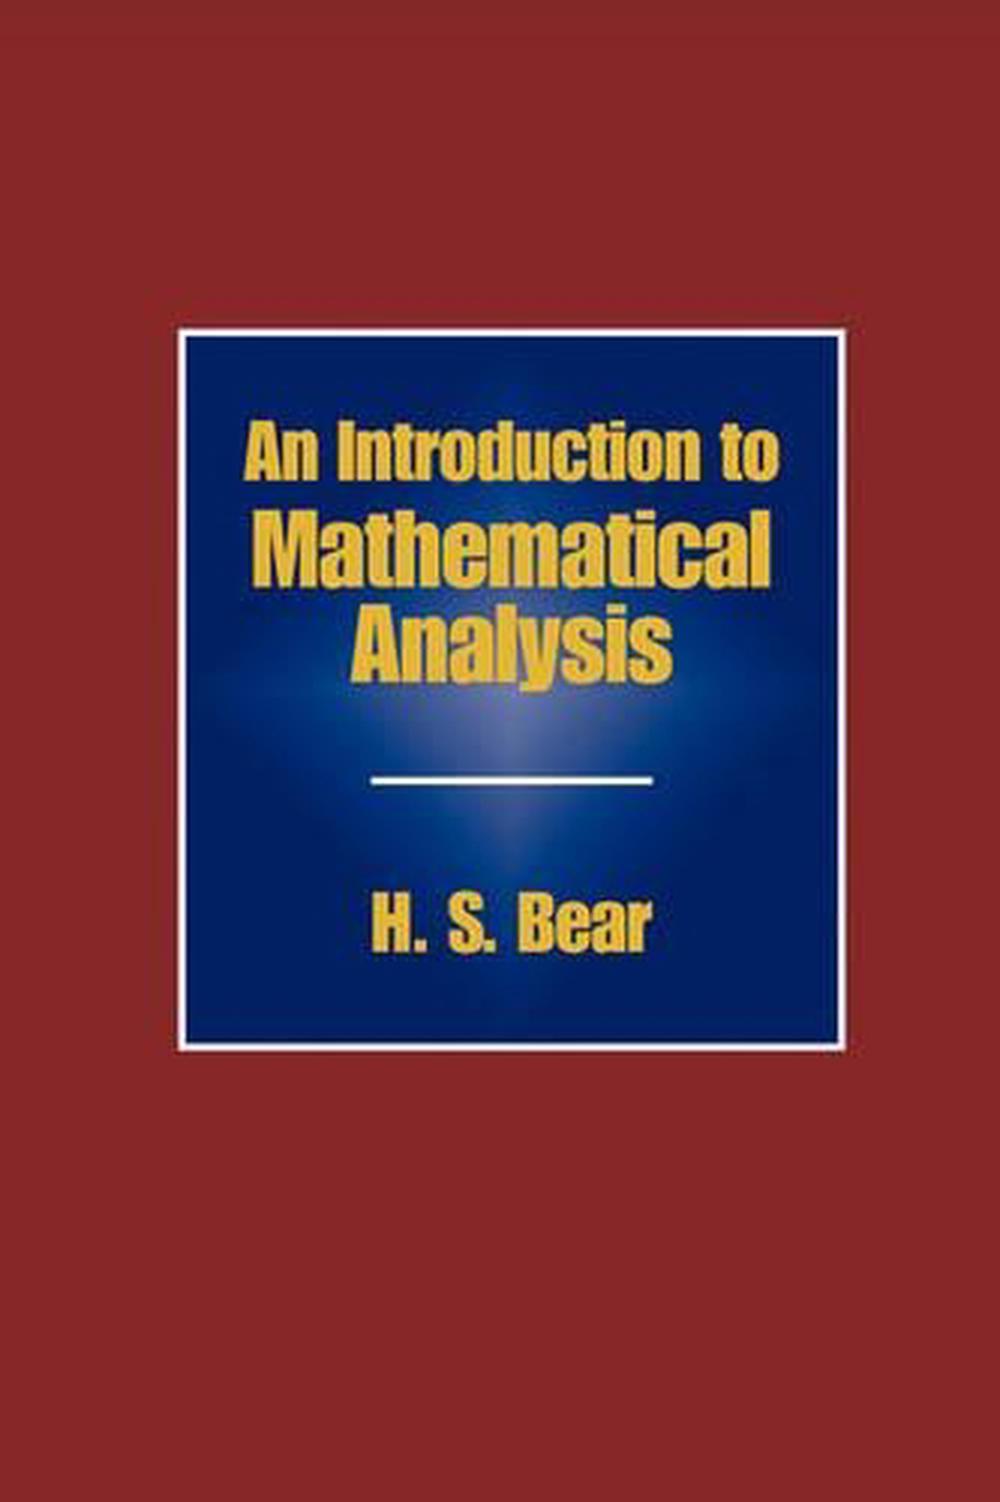 mathematical analysis malik arora pdf download